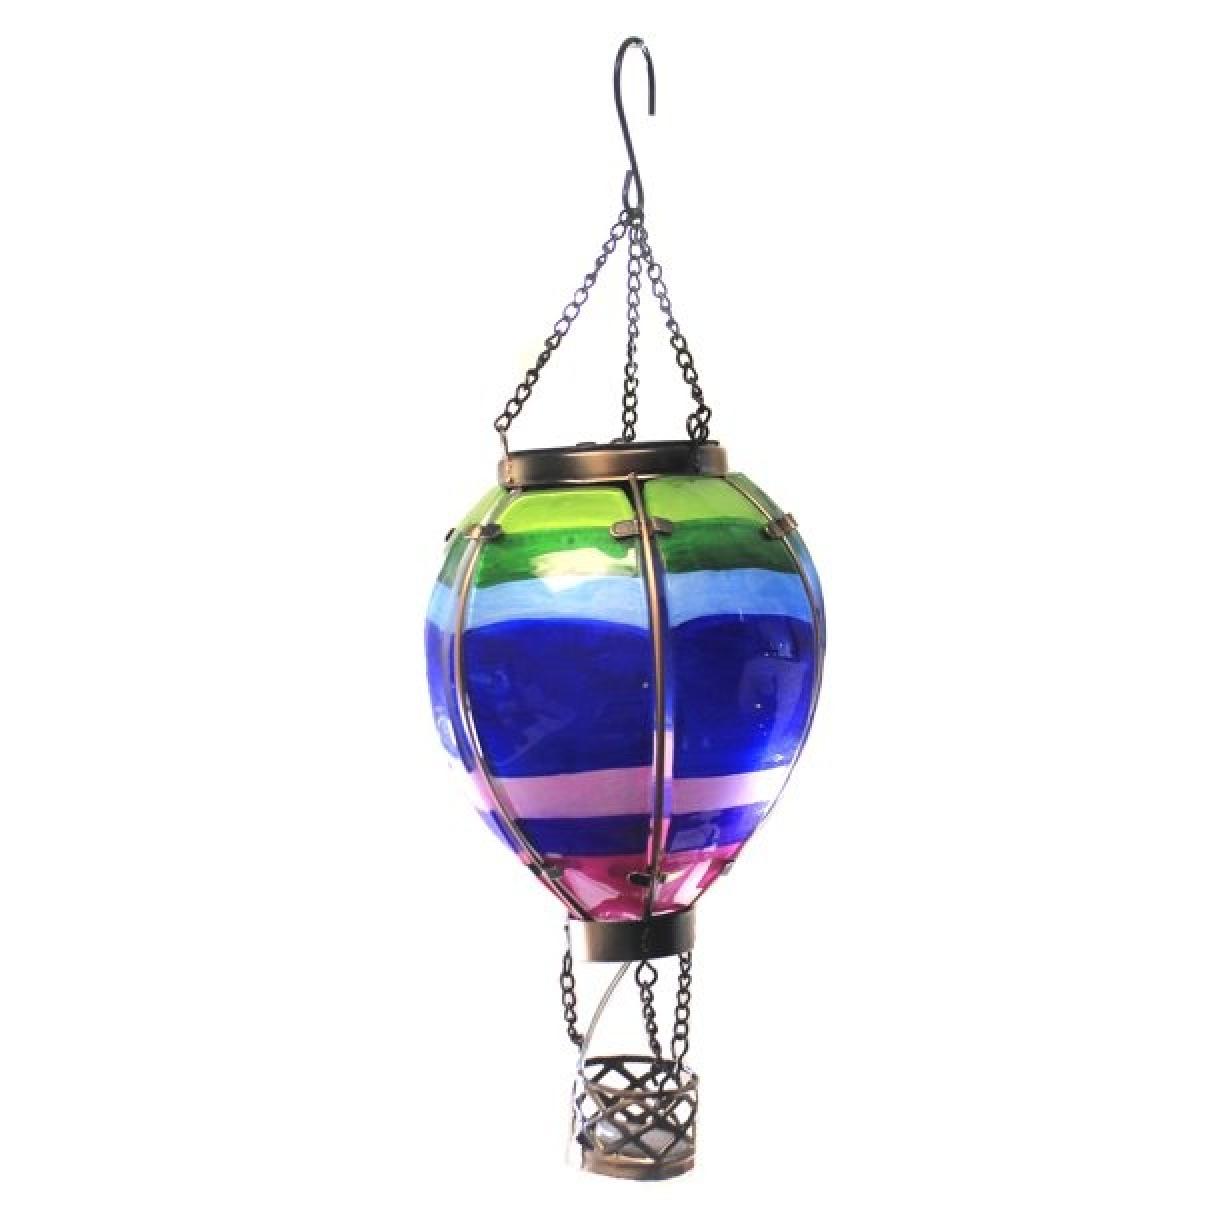 Regal Art & Gift Small Striped Hot Air Balloon Solar Lantern